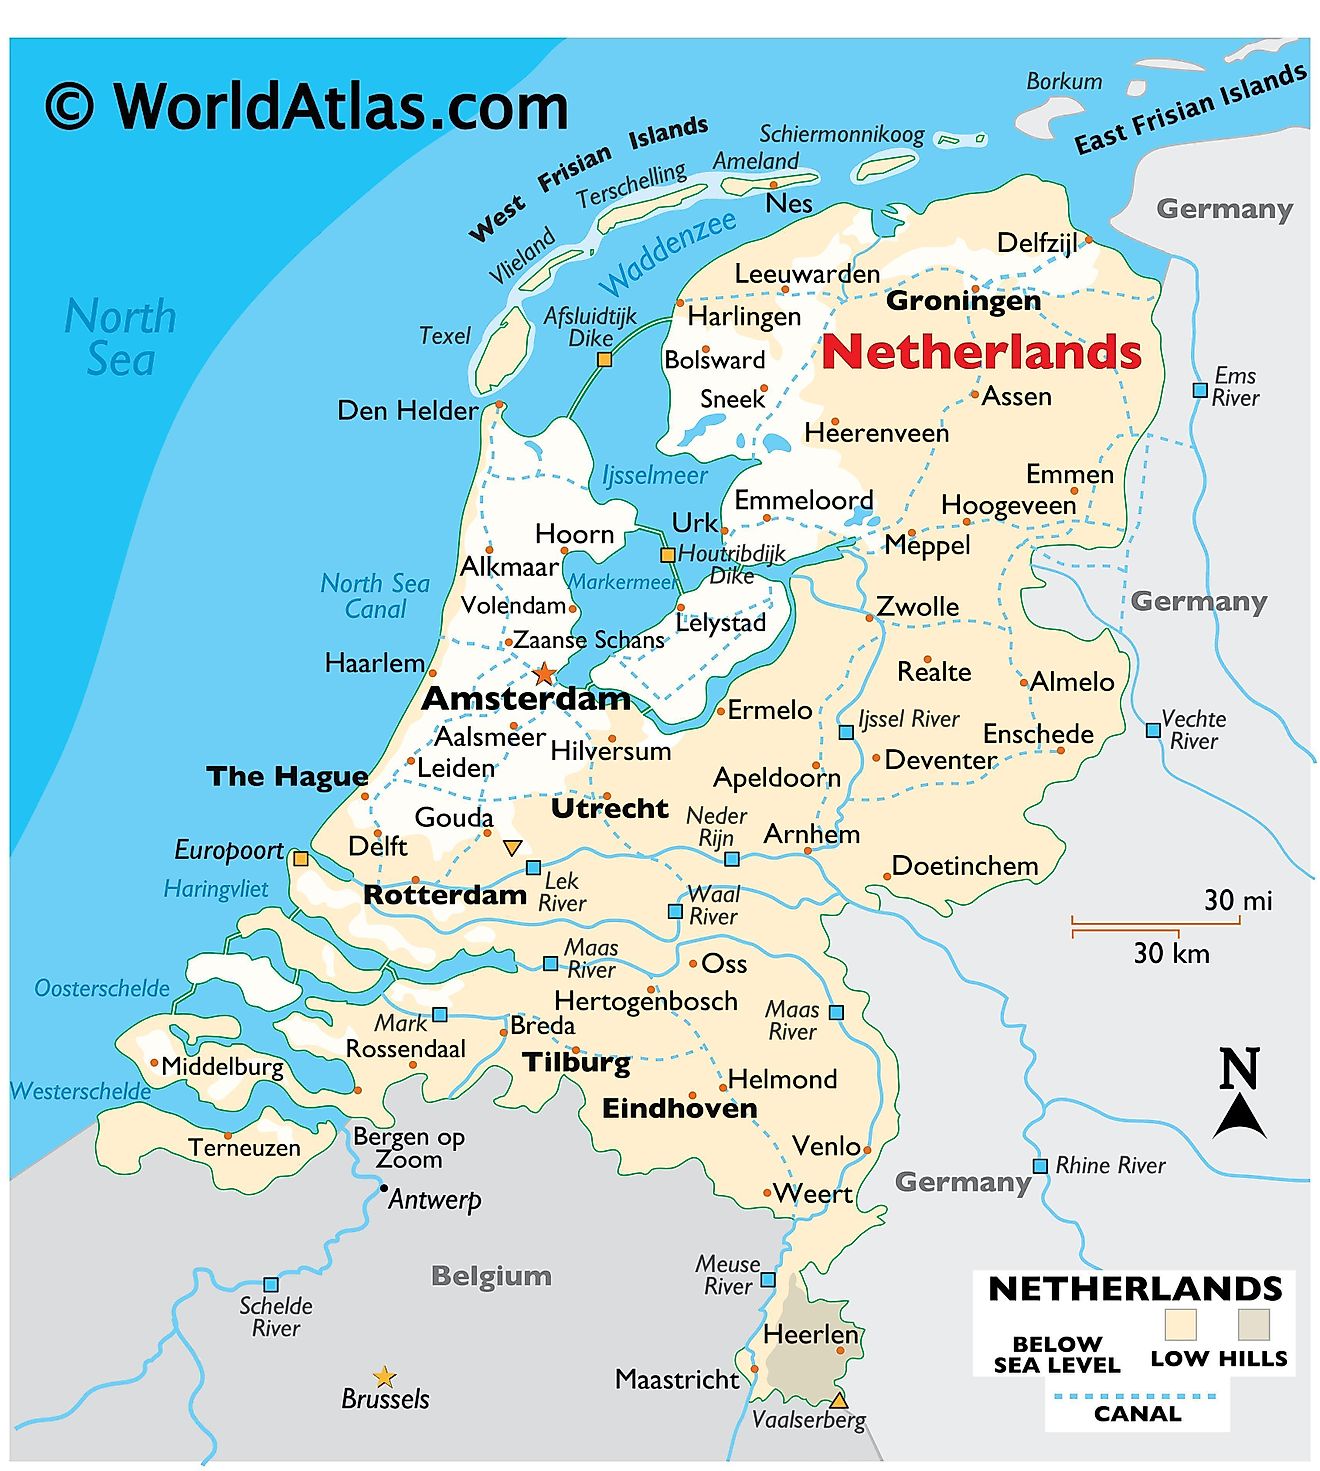 Mapa físico de los Países Bajos que muestra el relieve, los límites internacionales, los principales ríos, los puntos extremos, las ciudades importantes, las islas, etc.